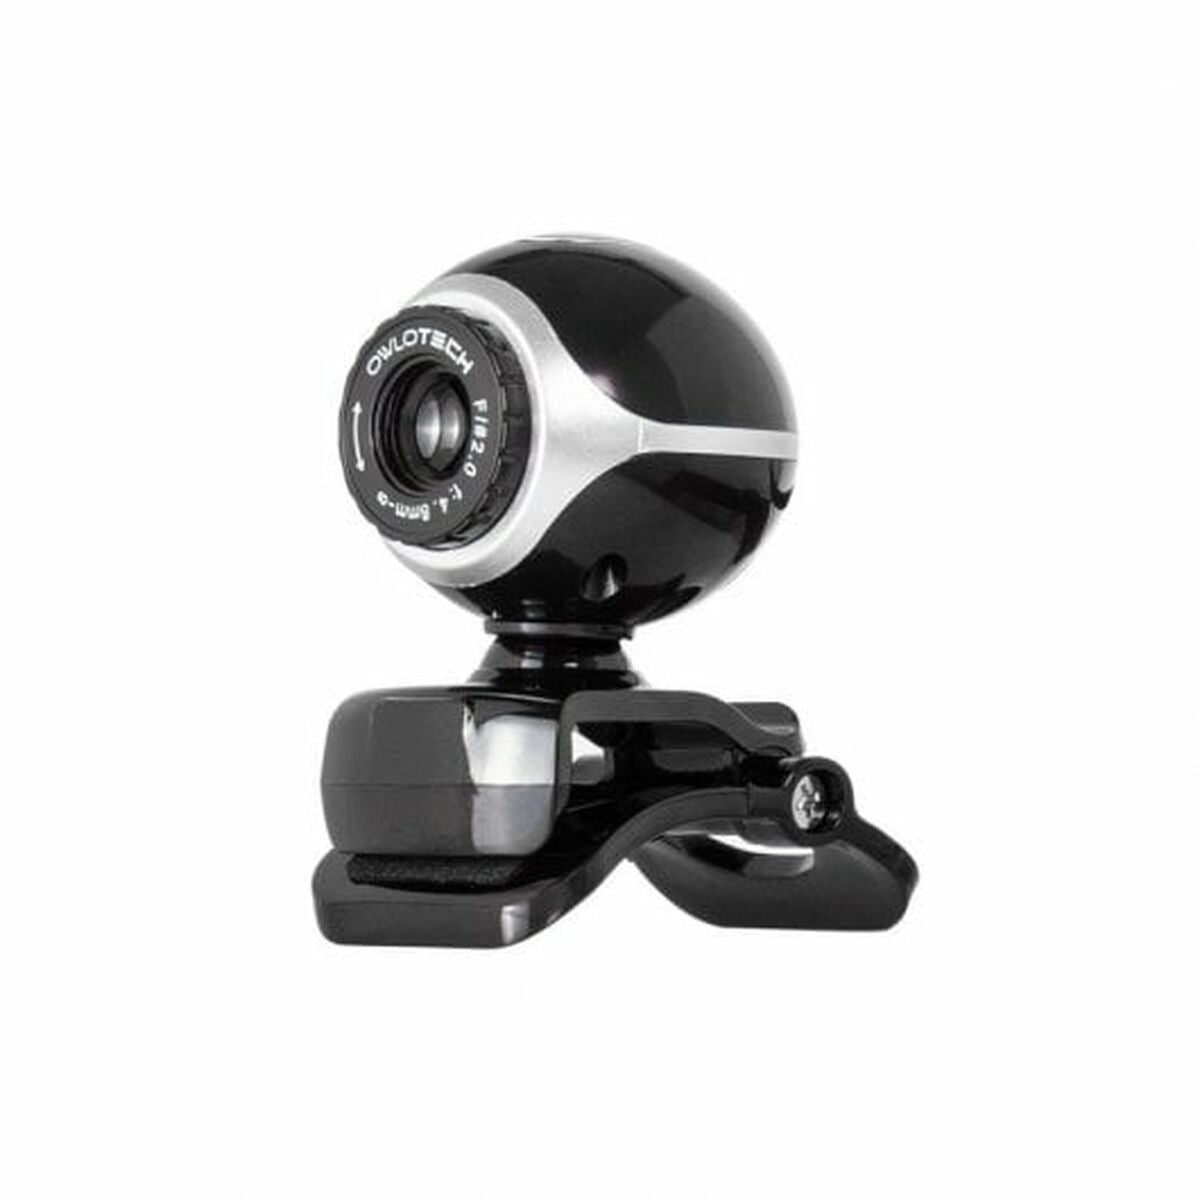 Owlotech Webcam 640 x 480 px CMOS